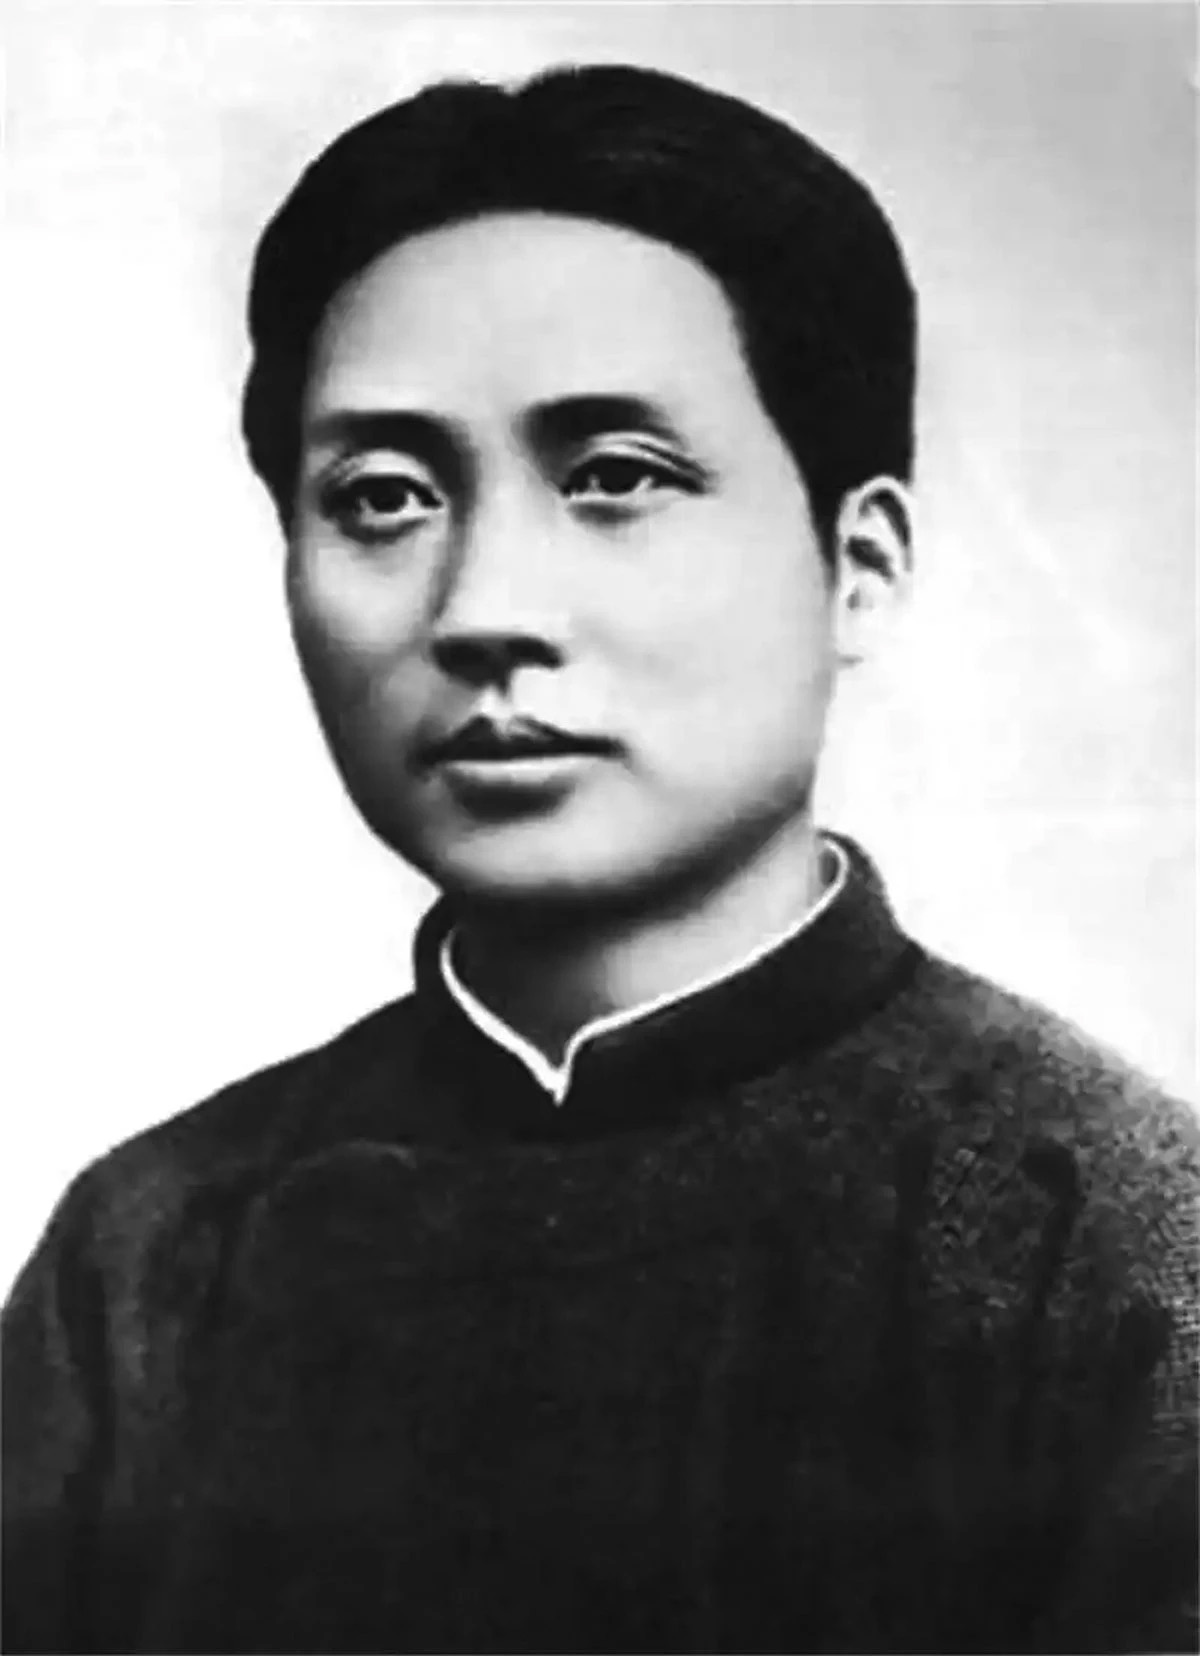 Mao Zedong in 1925